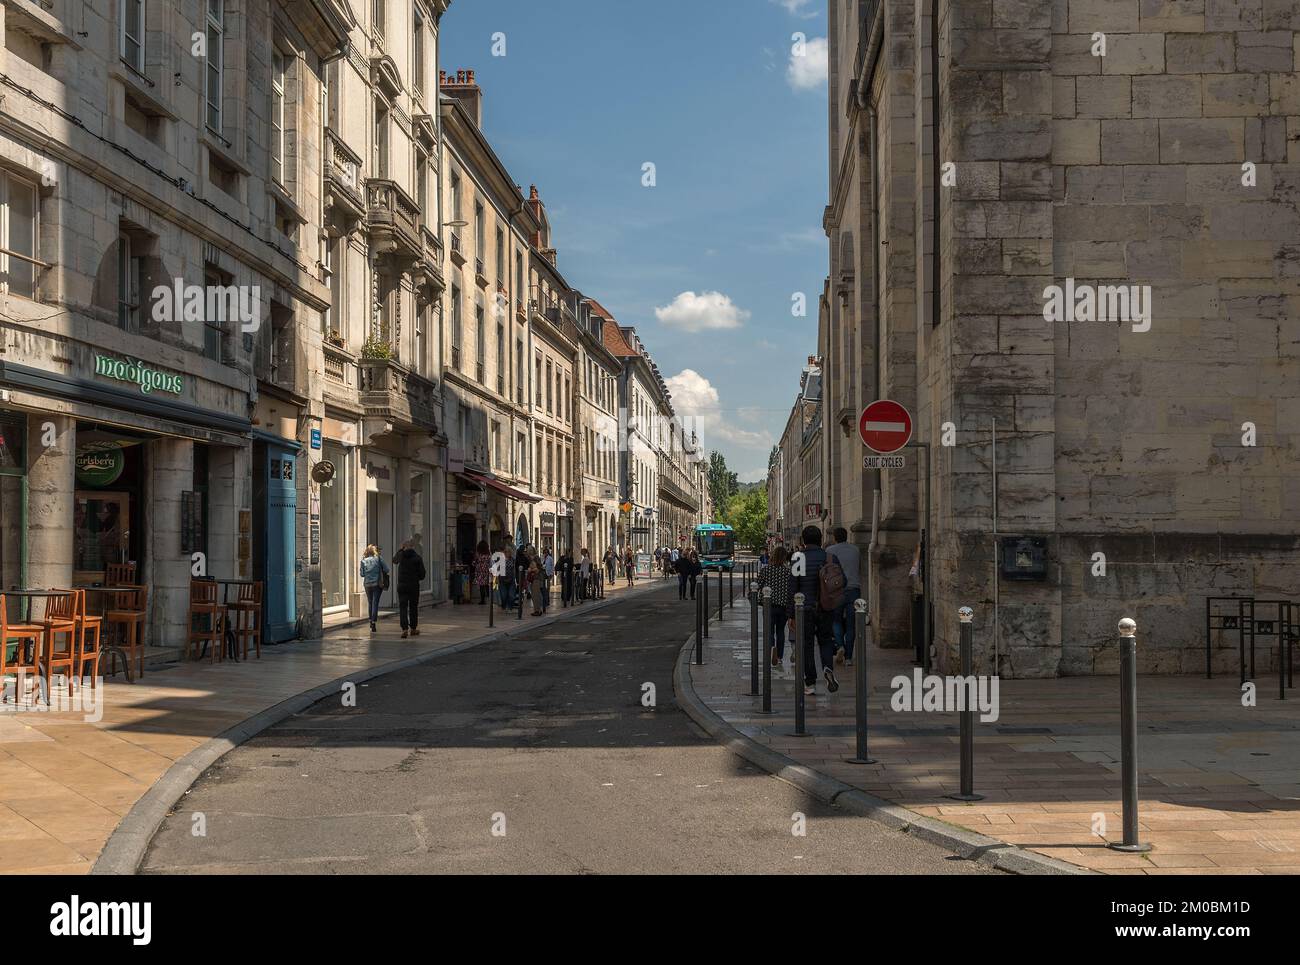 Vue de personnes non identifiées dans une rue de Besançon, France Banque D'Images